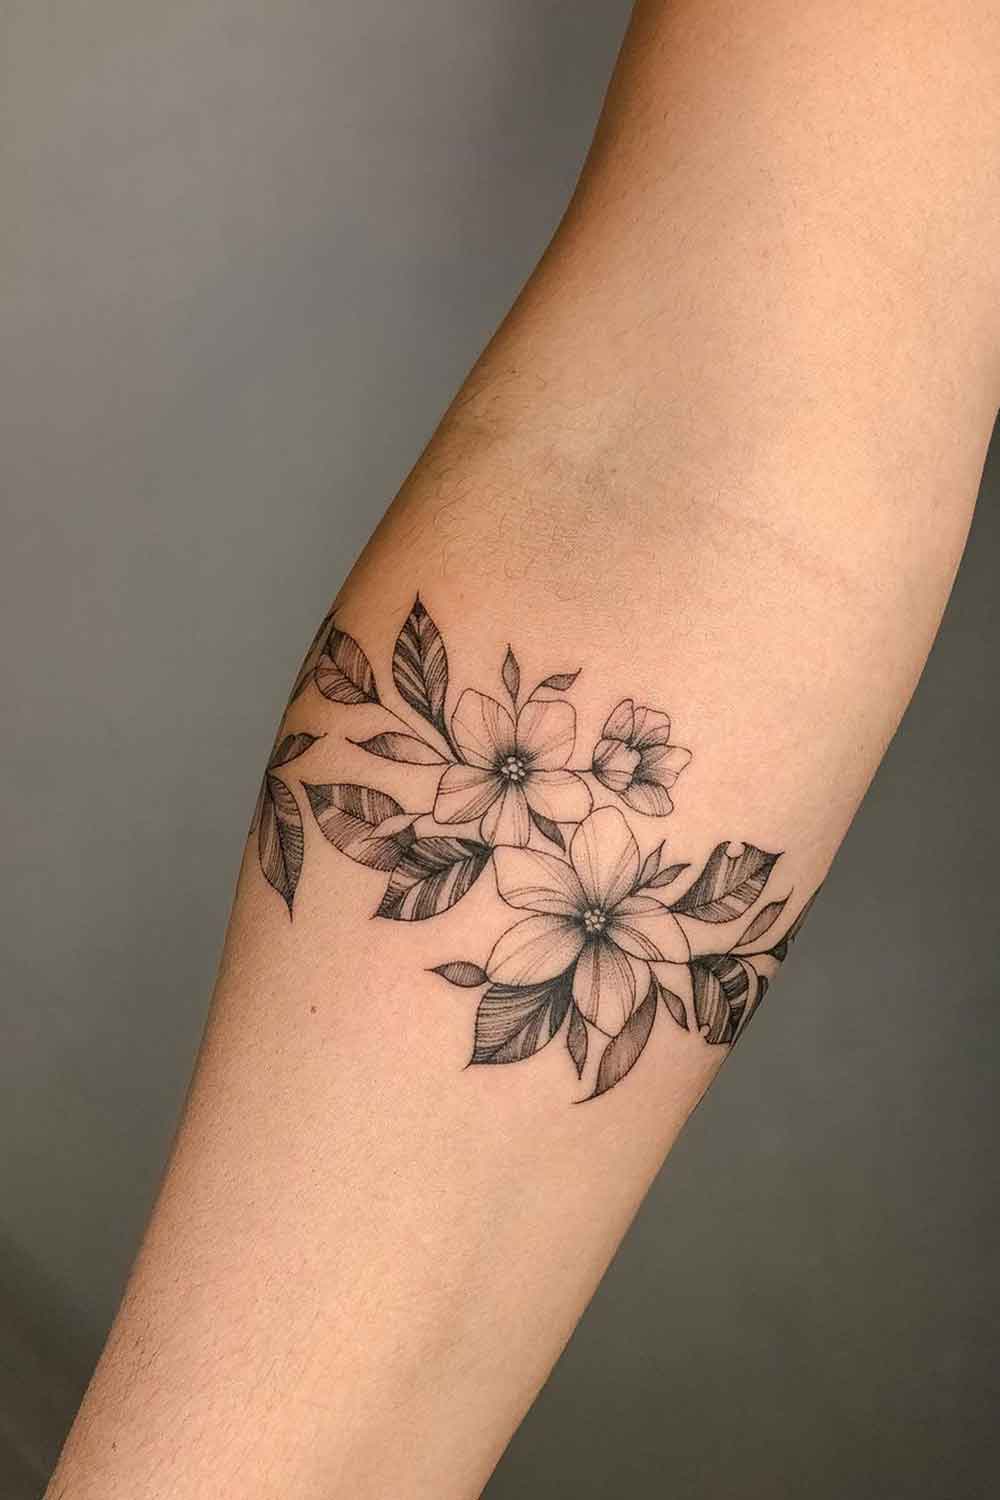 tatuagem-floral-pequena-no-antebraco 